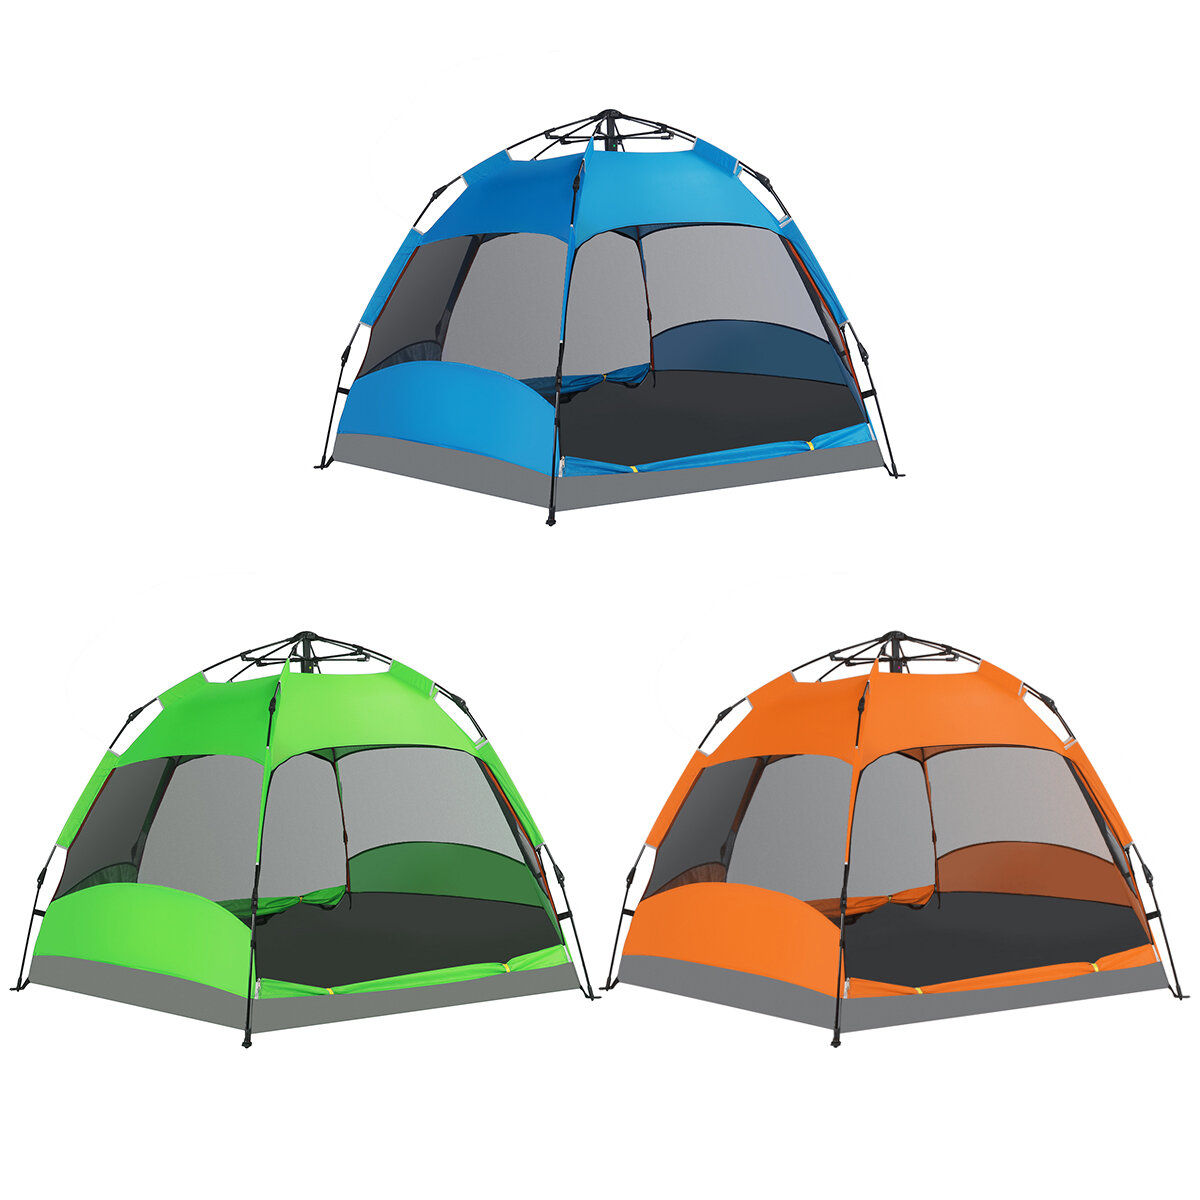 Tienda de campaña portátil para 5-8 personas, antisol y resistente al agua, doble capa, completamente automática para camping al aire libre.